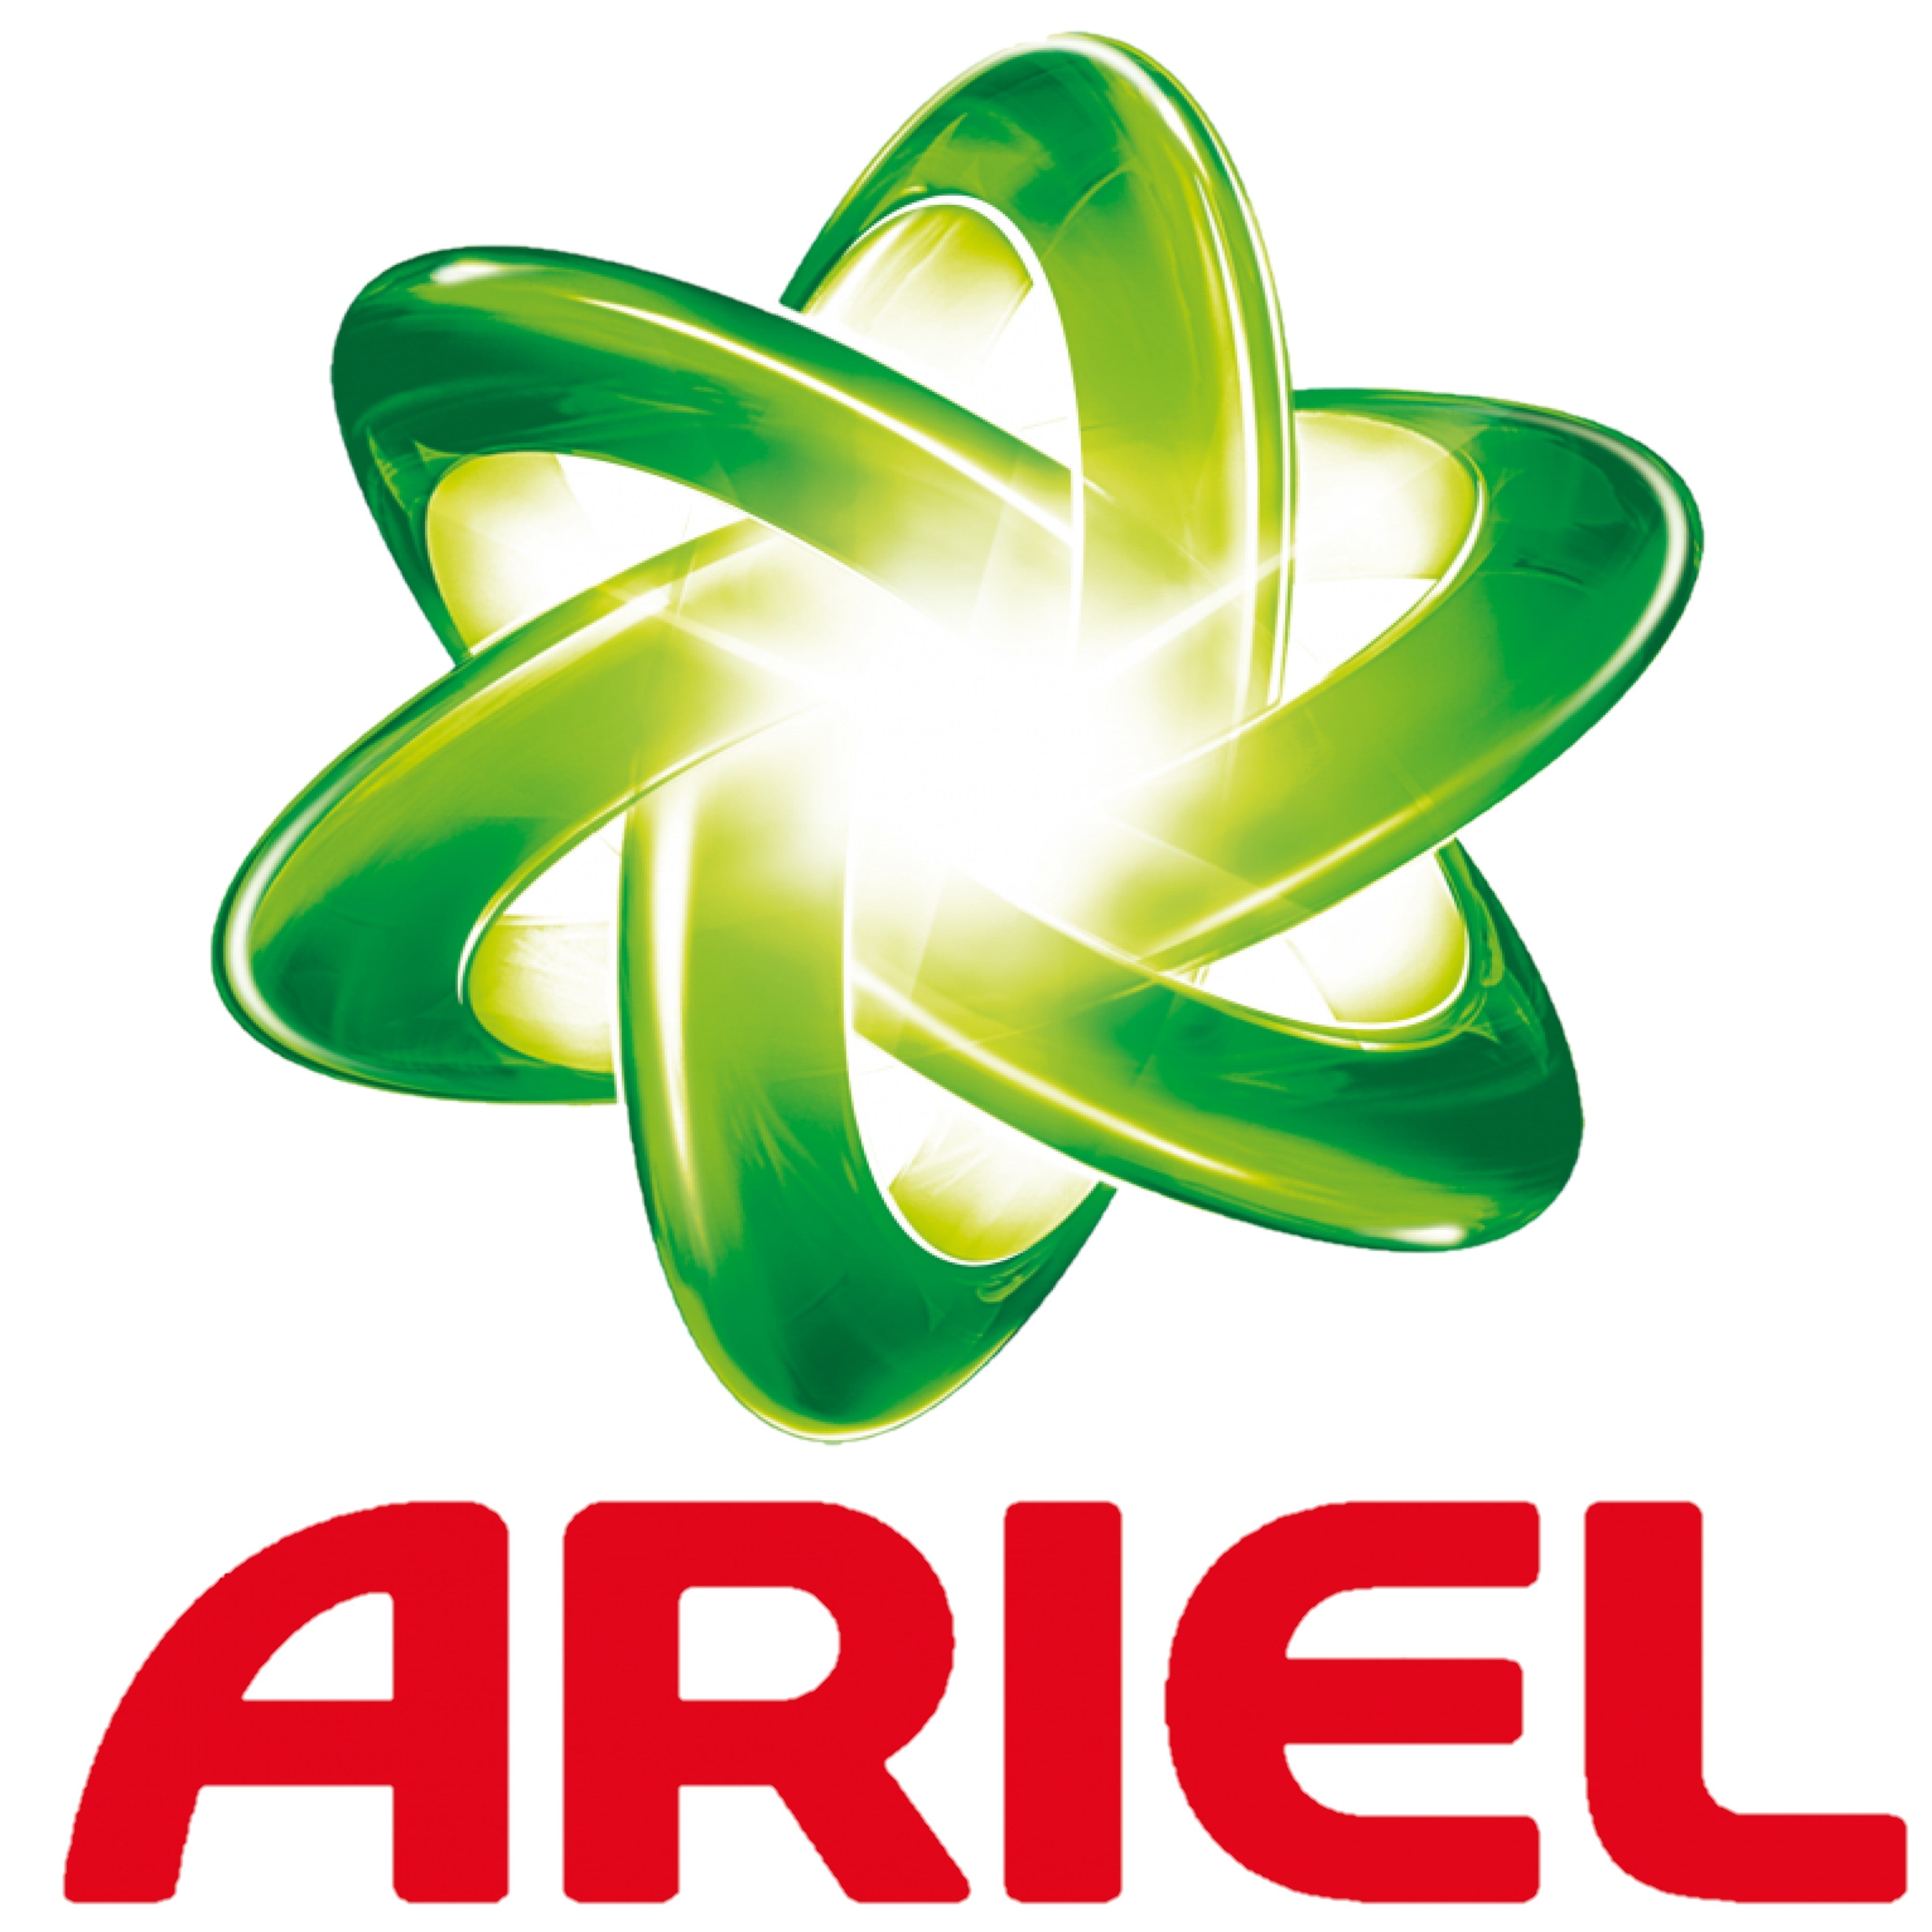 Ariel Ultra Vlekverwijderaar vloeibaar wasmiddel 1215ML 27 wasbeurten